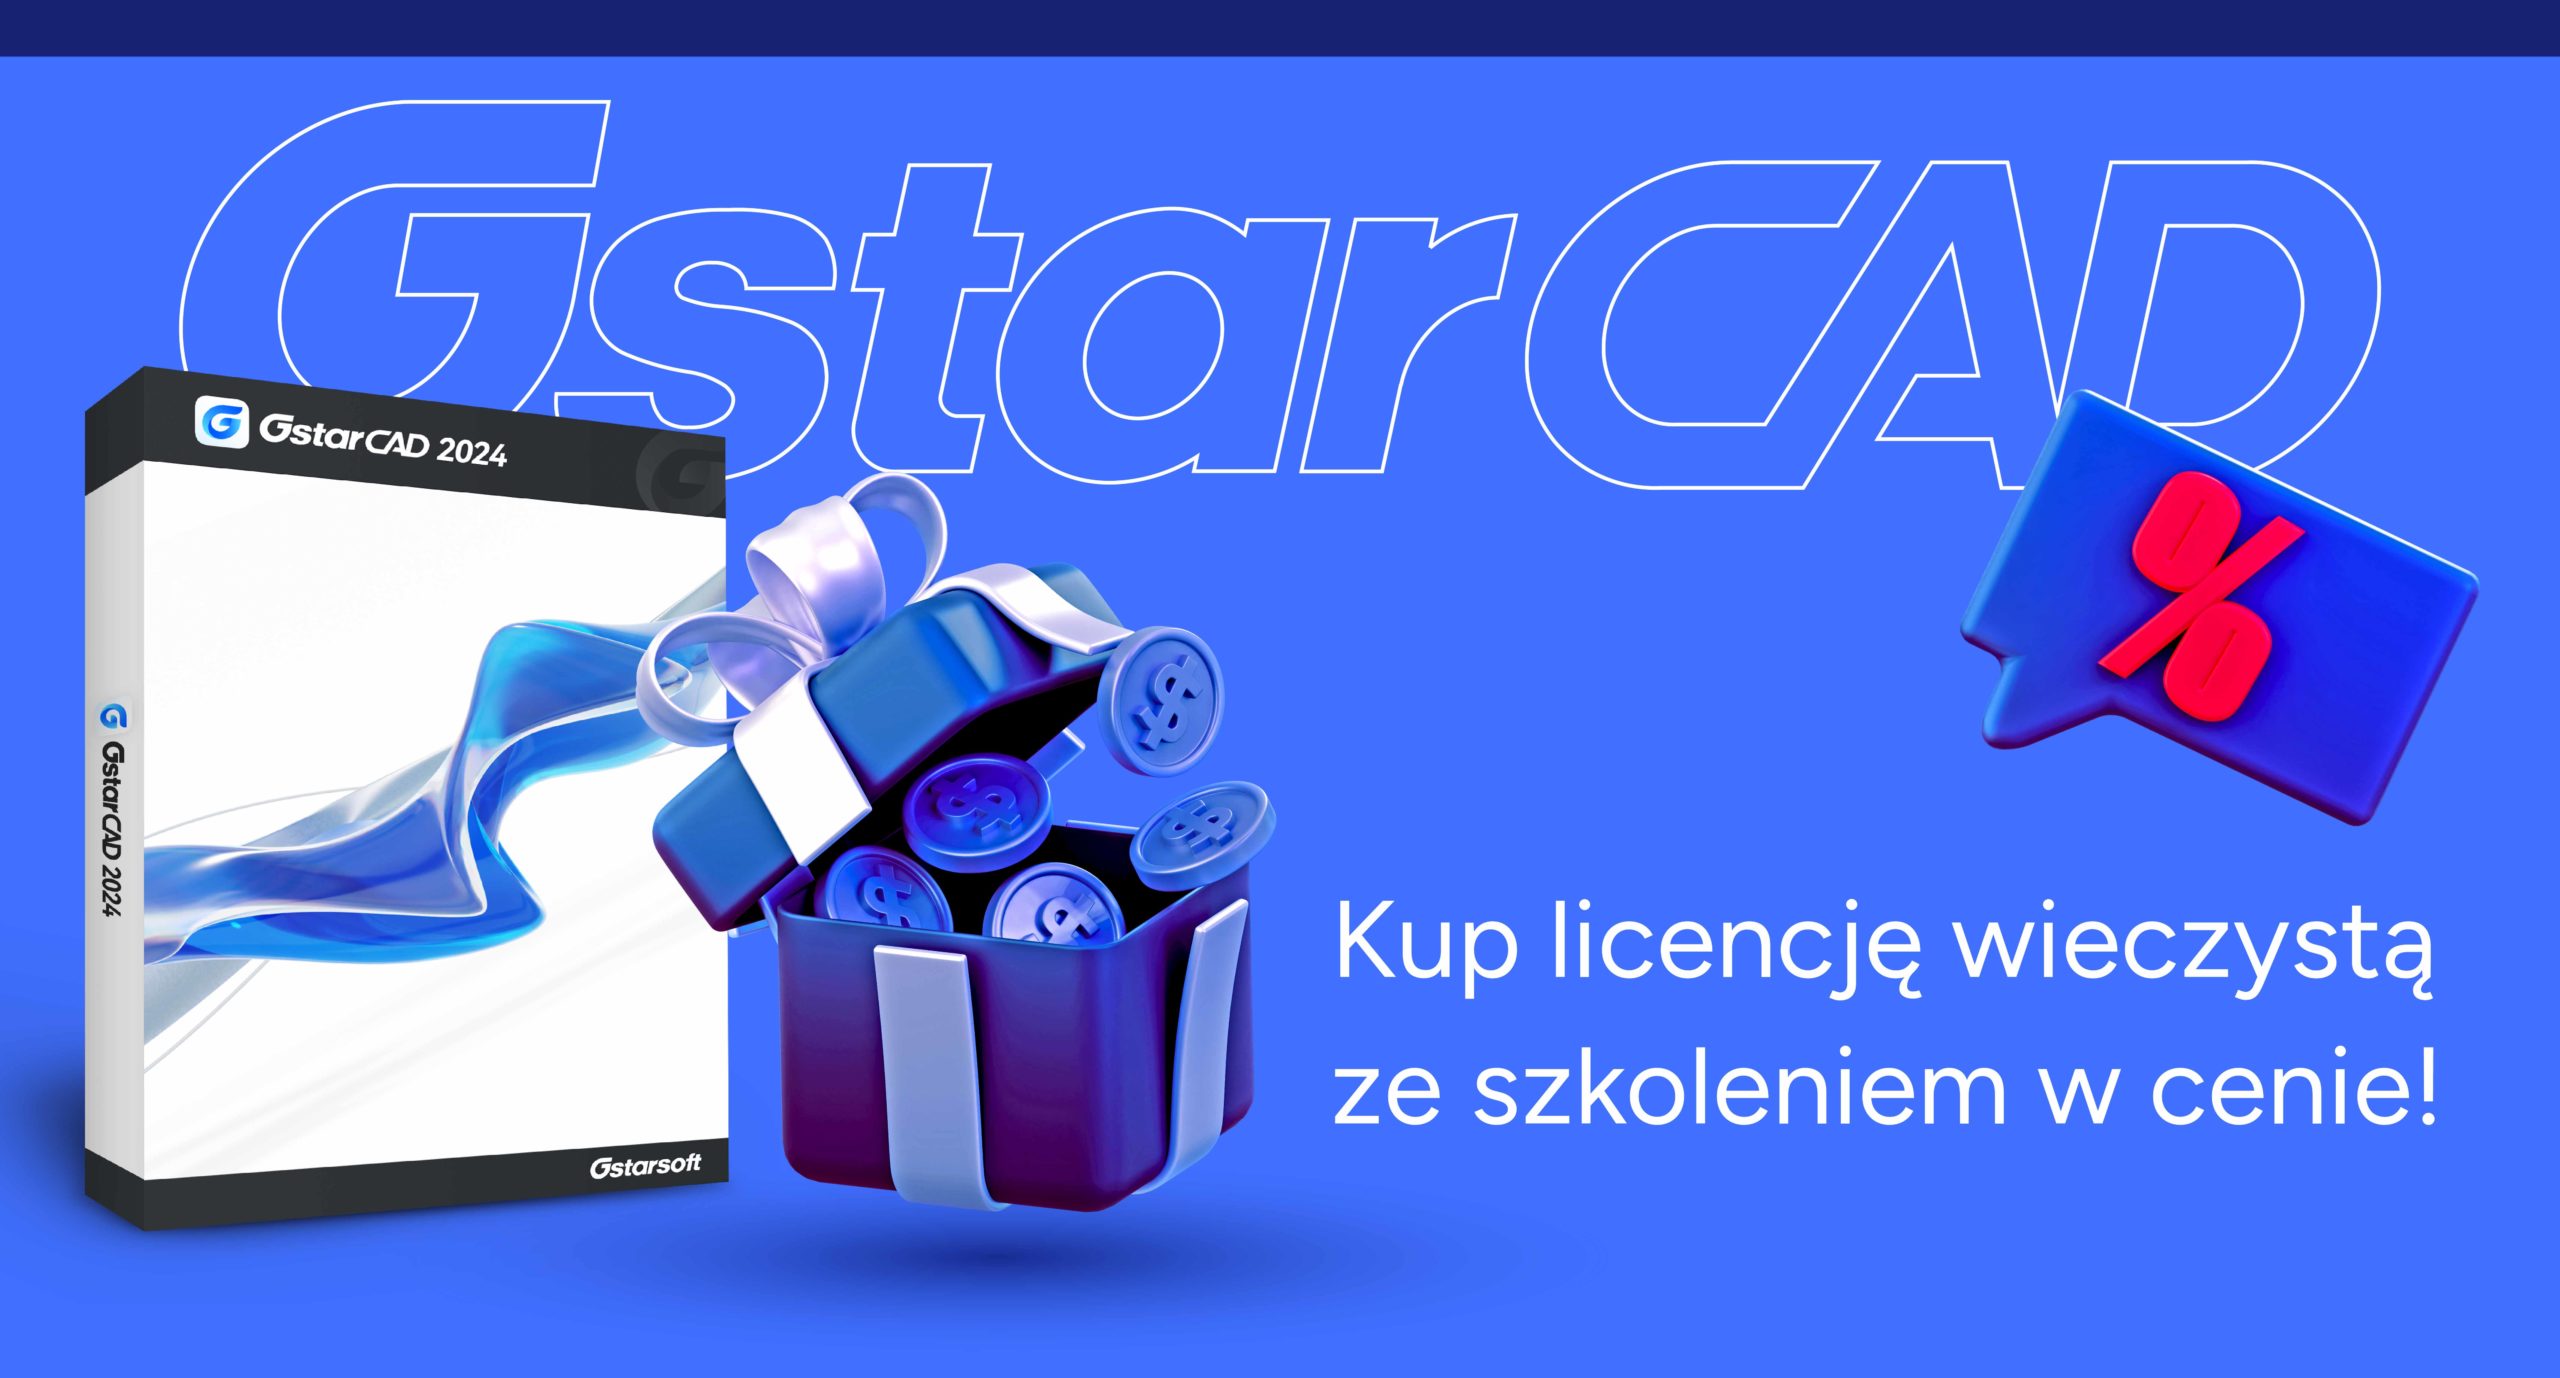 Promocja na licencje GstarCAD!